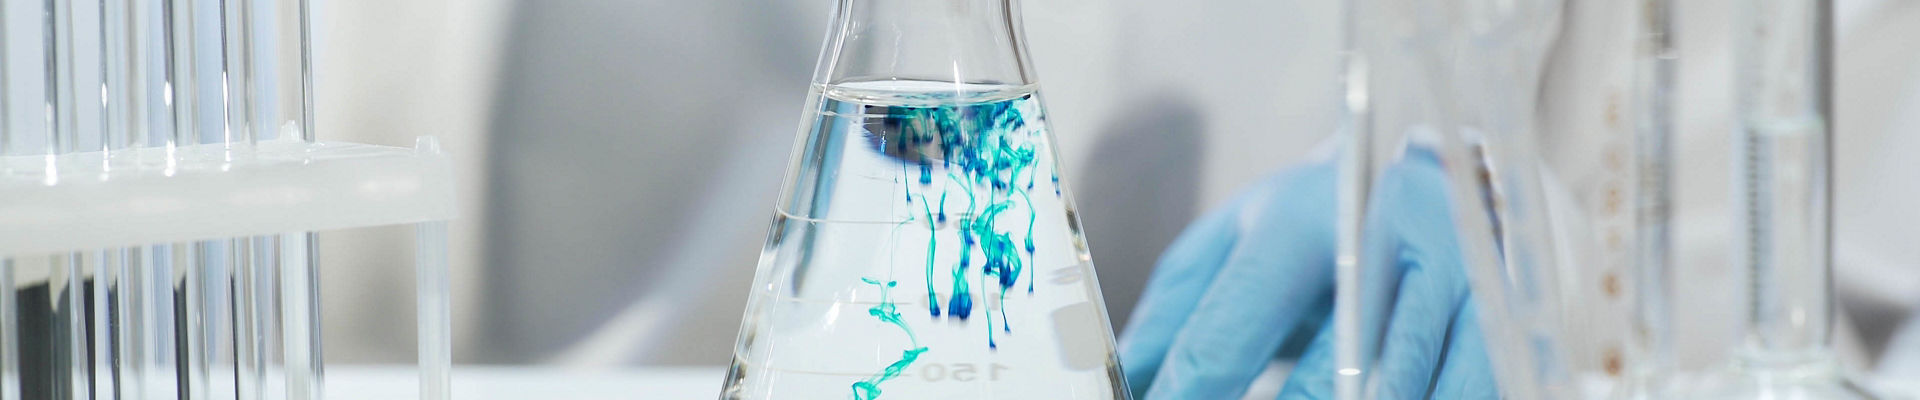 Químico vertiendo la sustancia azul en un matraz cónico